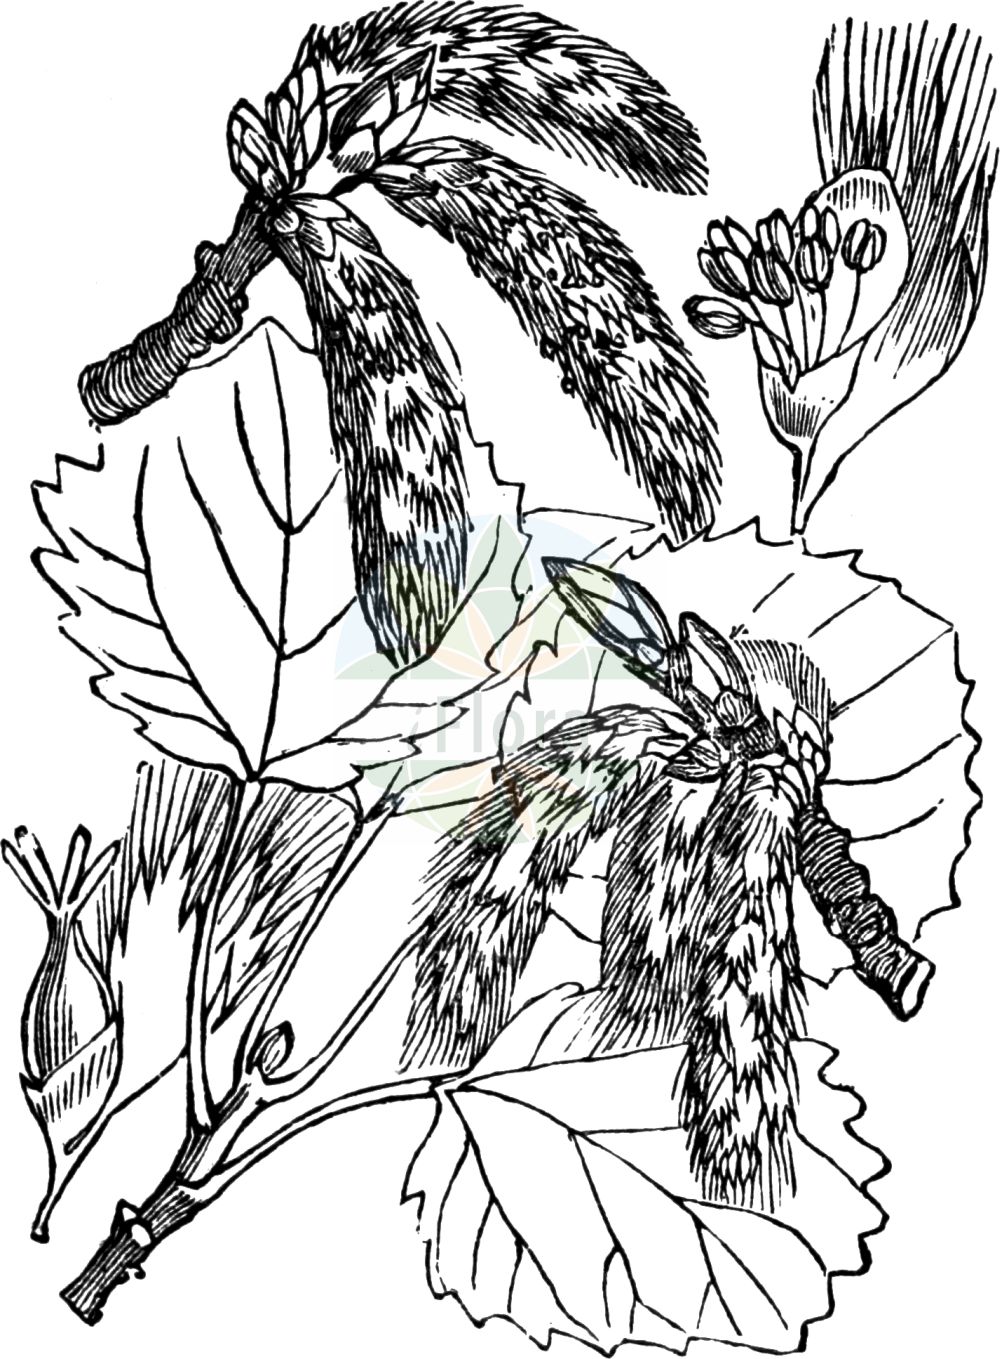 Historische Abbildung von Populus tremula (Zitter-Pappel - Aspen). Das Bild zeigt Blatt, Bluete, Frucht und Same. ---- Historical Drawing of Populus tremula (Zitter-Pappel - Aspen). The image is showing leaf, flower, fruit and seed.(Populus tremula,Zitter-Pappel,Aspen,Populus schischkinii,Populus tremula,Zitter-Pappel,Aspe,Espe,Aspen,American Aspen,European Aspen,Quaking Aspen,Trembling Poplar,Populus,Pappel,Poplar,Salicaceae,Weidengewächse,Willow family,Blatt,Bluete,Frucht,Same,leaf,flower,fruit,seed,Fitch et al. (1880))